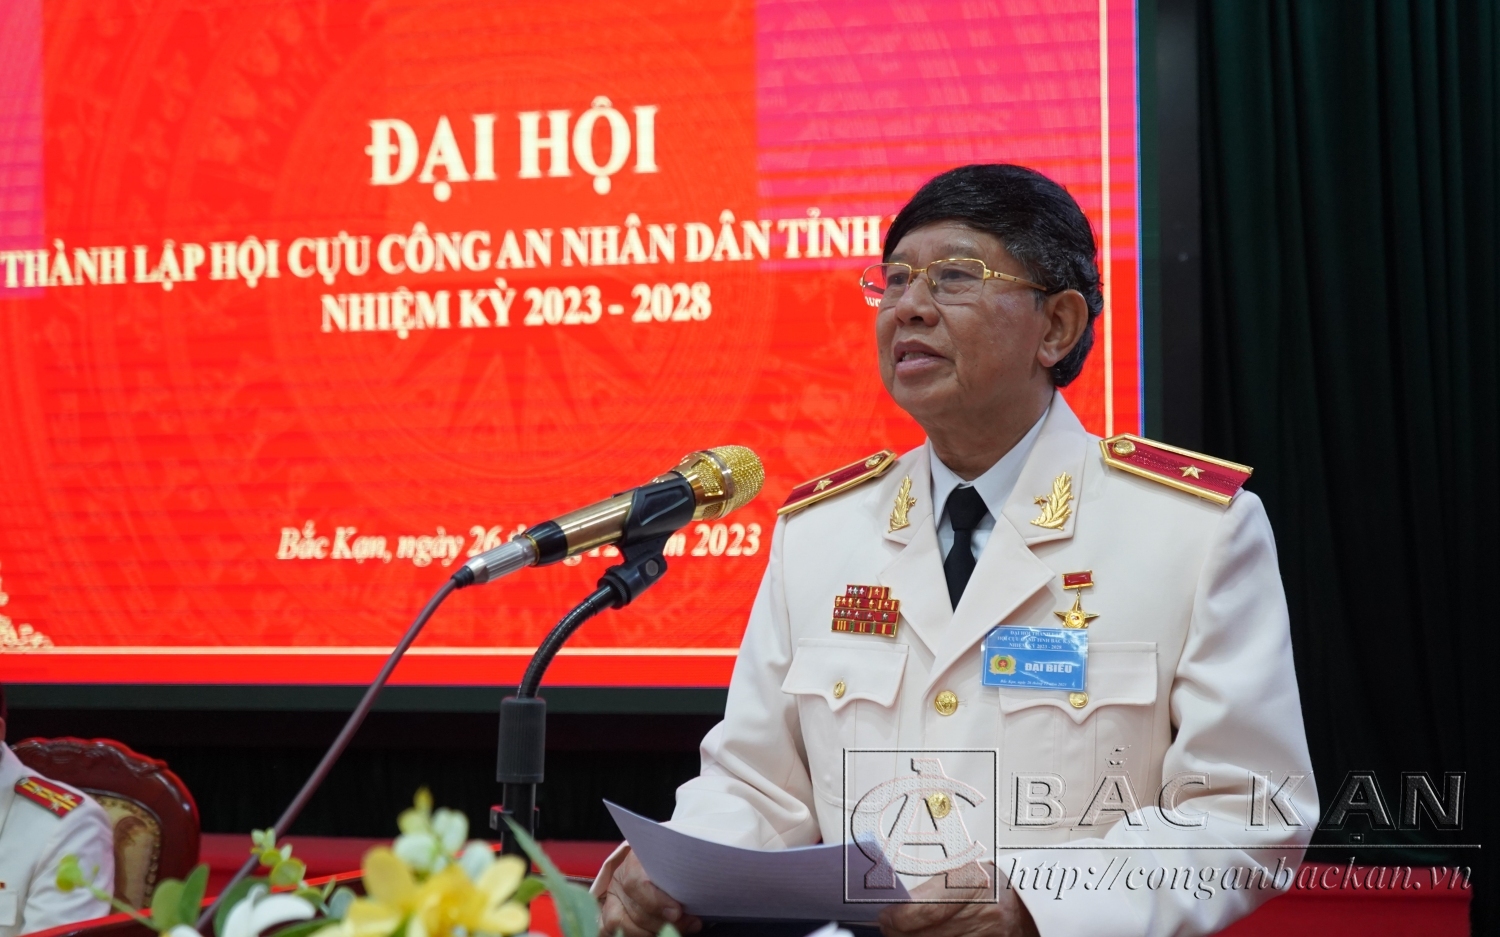 Thiếu tướng Vũ Hùng Vương, Anh hùng lực lượng vũ trang nhân dân, Phó Chủ tịch thường trực Hội Cựu Công an nhân dân Việt Nam phát biểu tại Đại hội